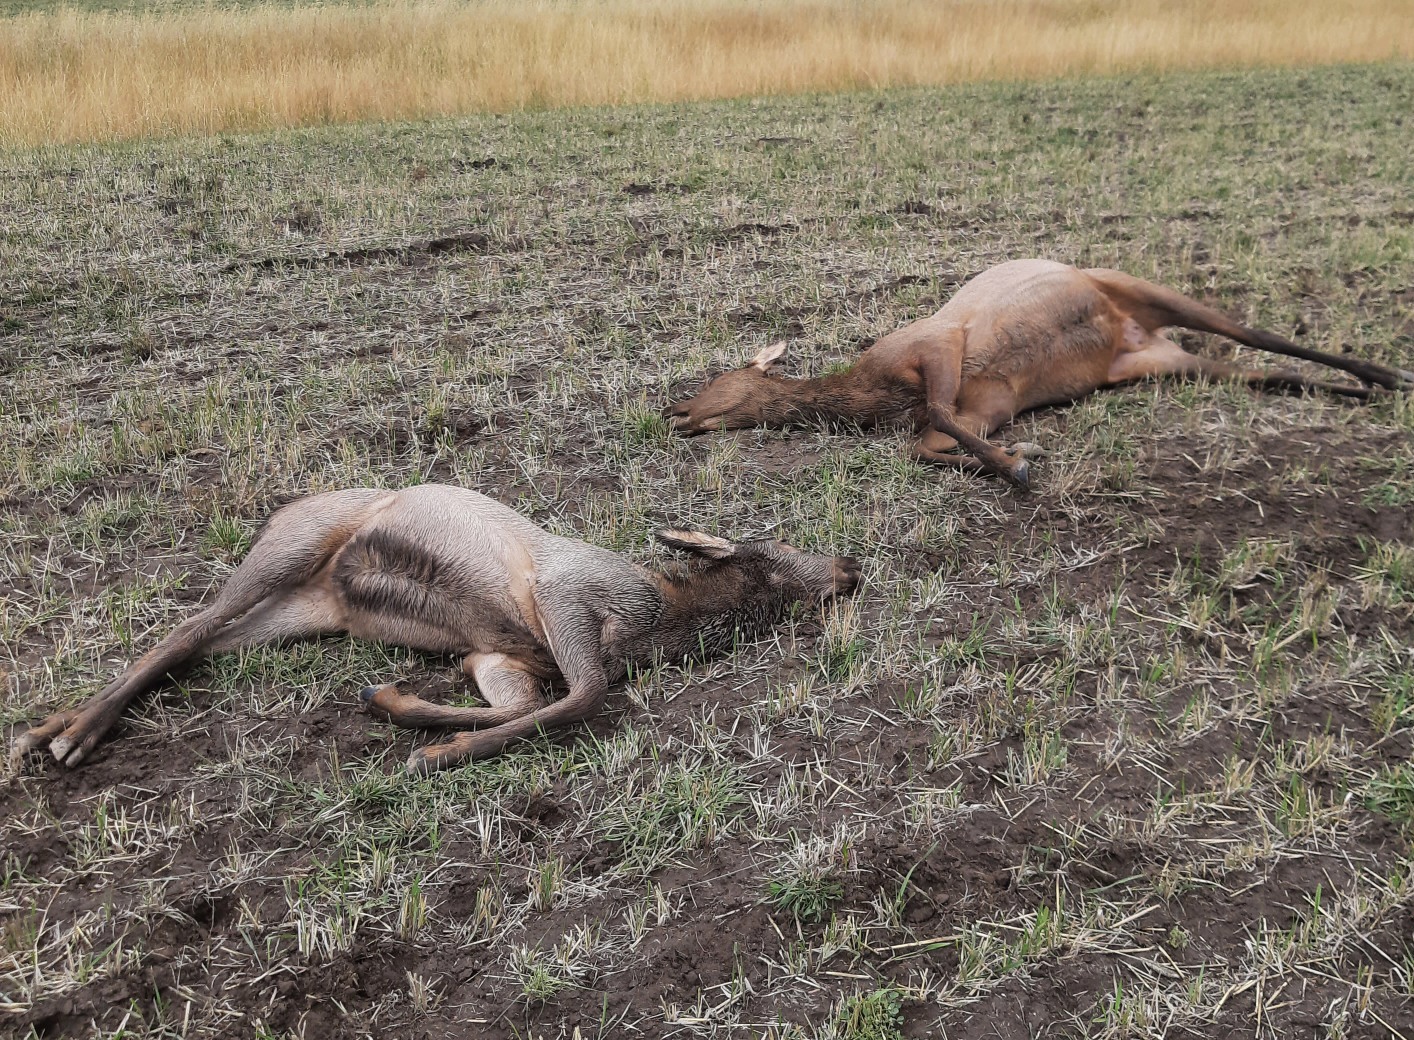 Deceased cow and calf elk lying in a field.